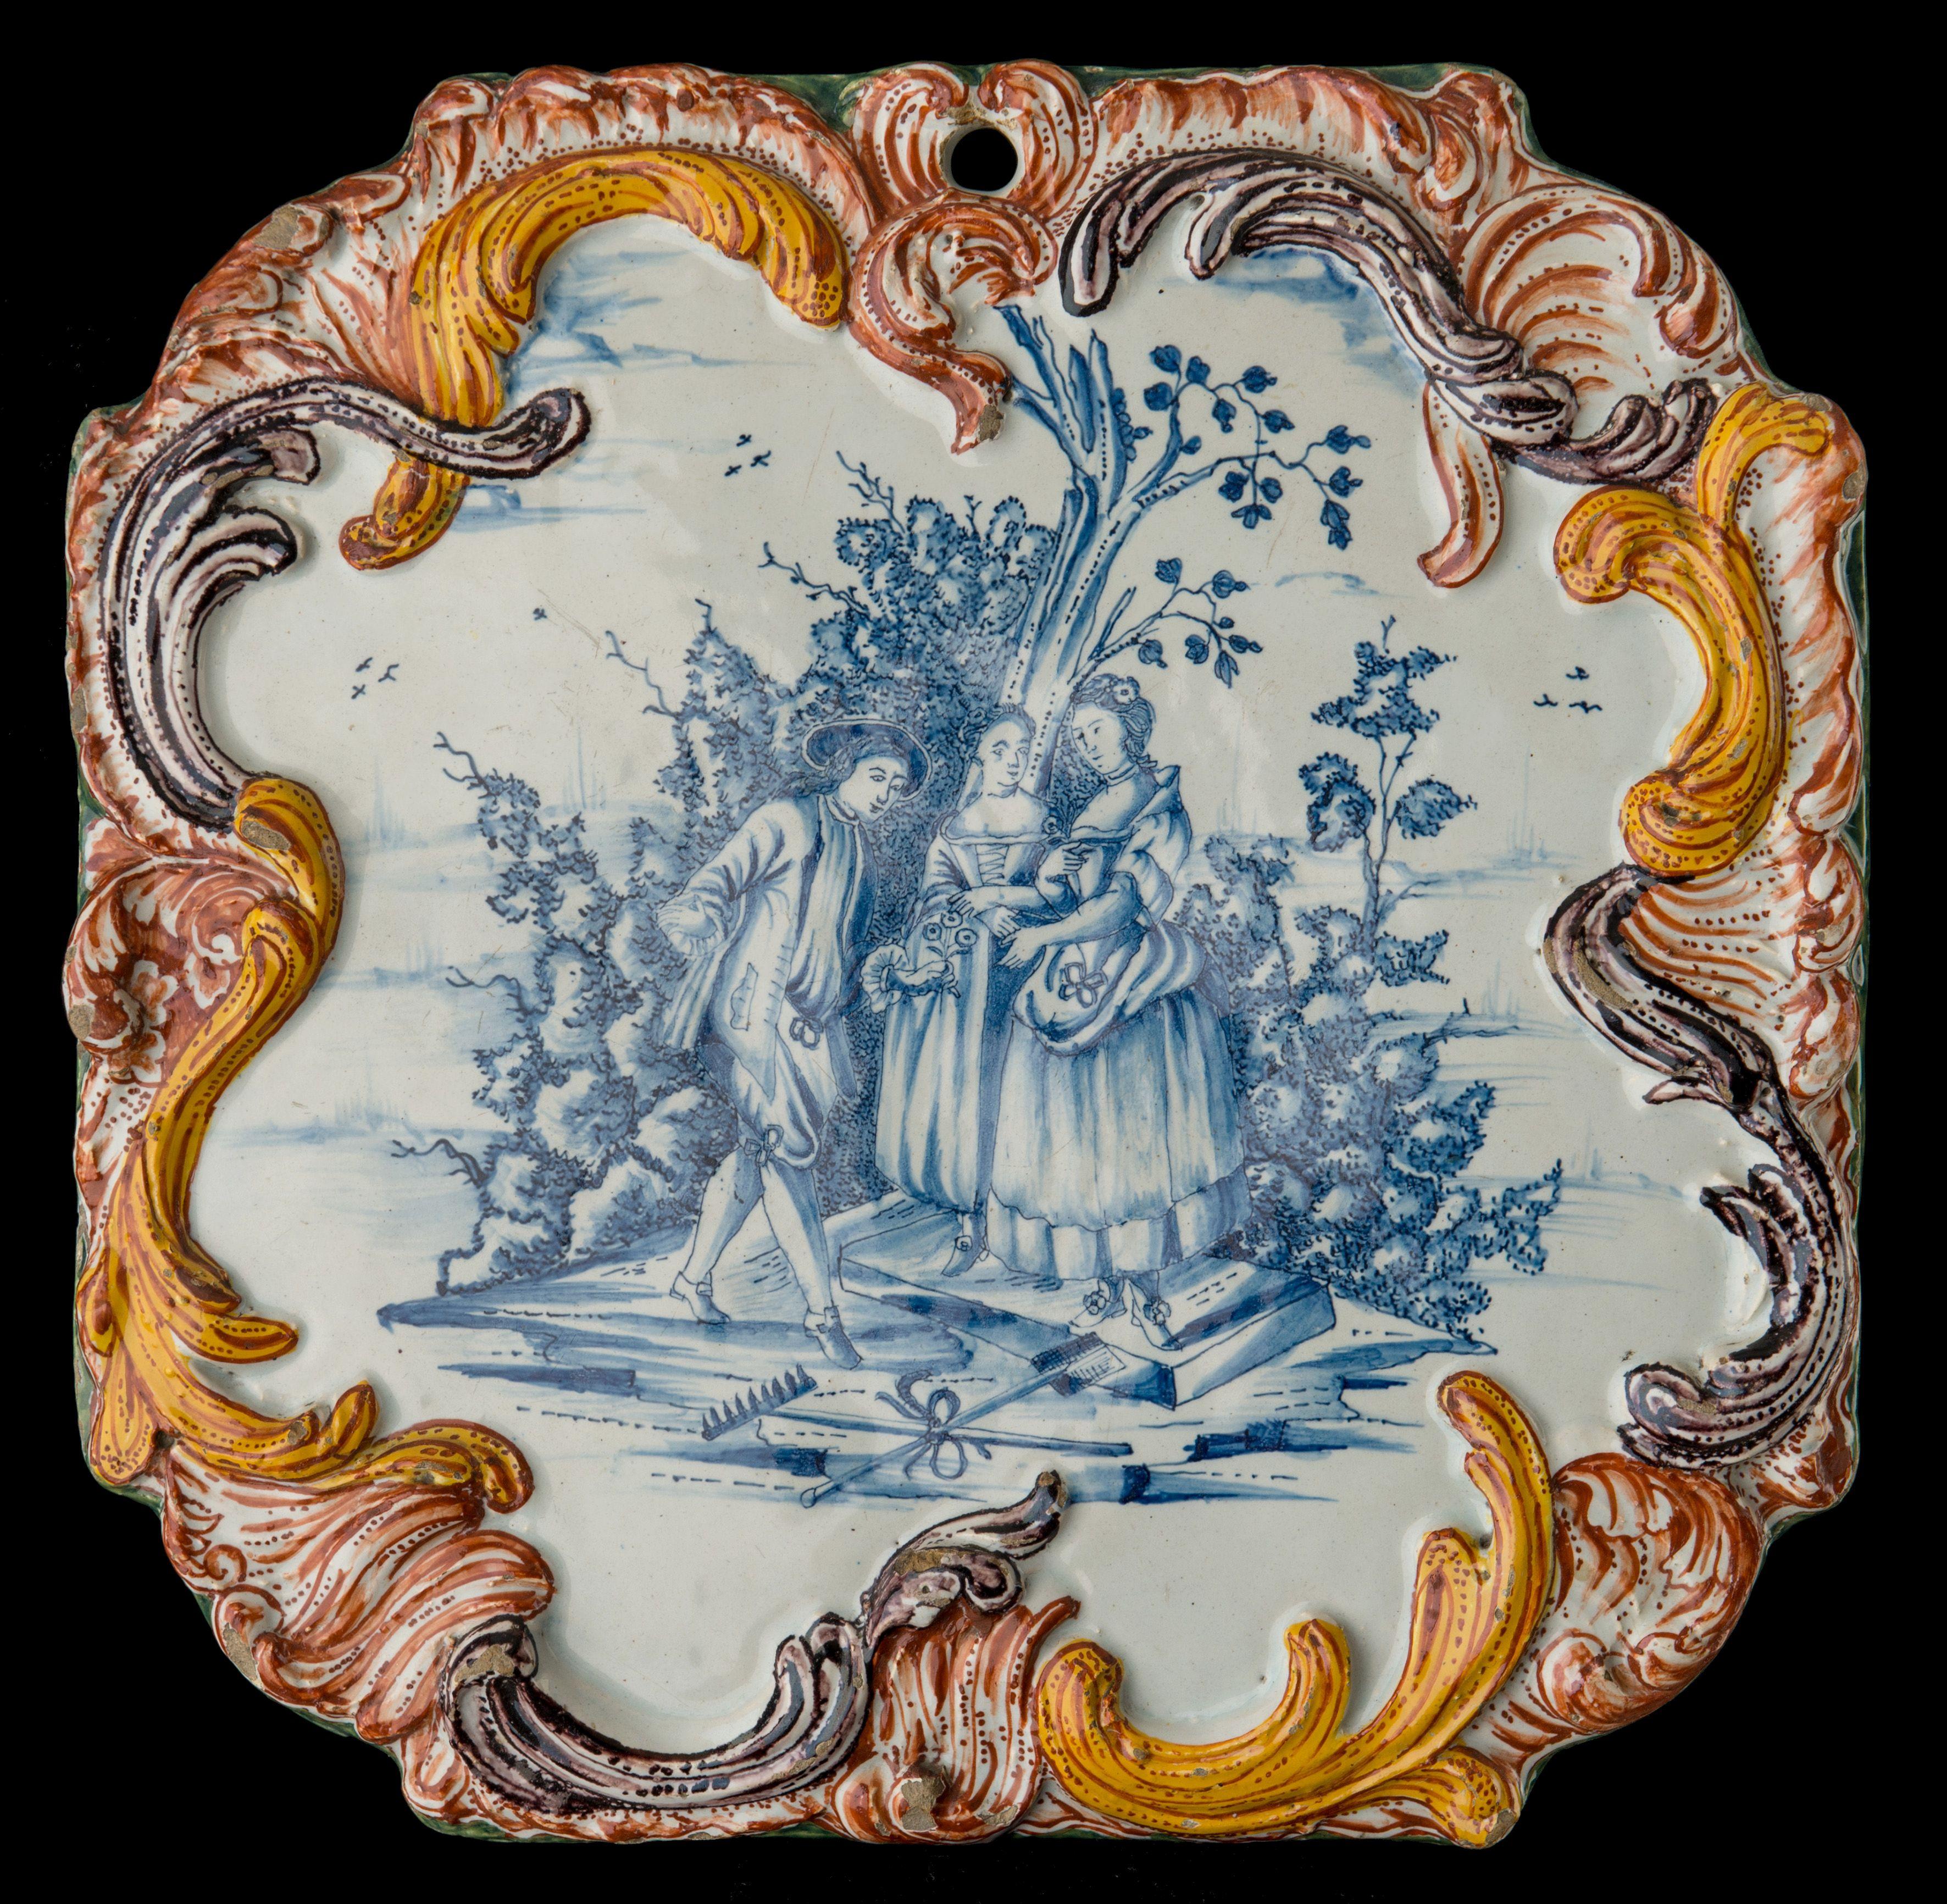 La plaque octogonale est peinte en bleu avec une scène de courtoisie. Un jeune homme offre une fleur à une jeune femme accompagnée de son chaperon, sur un fond d'arbres et d'arbustes. Au premier plan se trouvent un râteau et une pelle en forme de